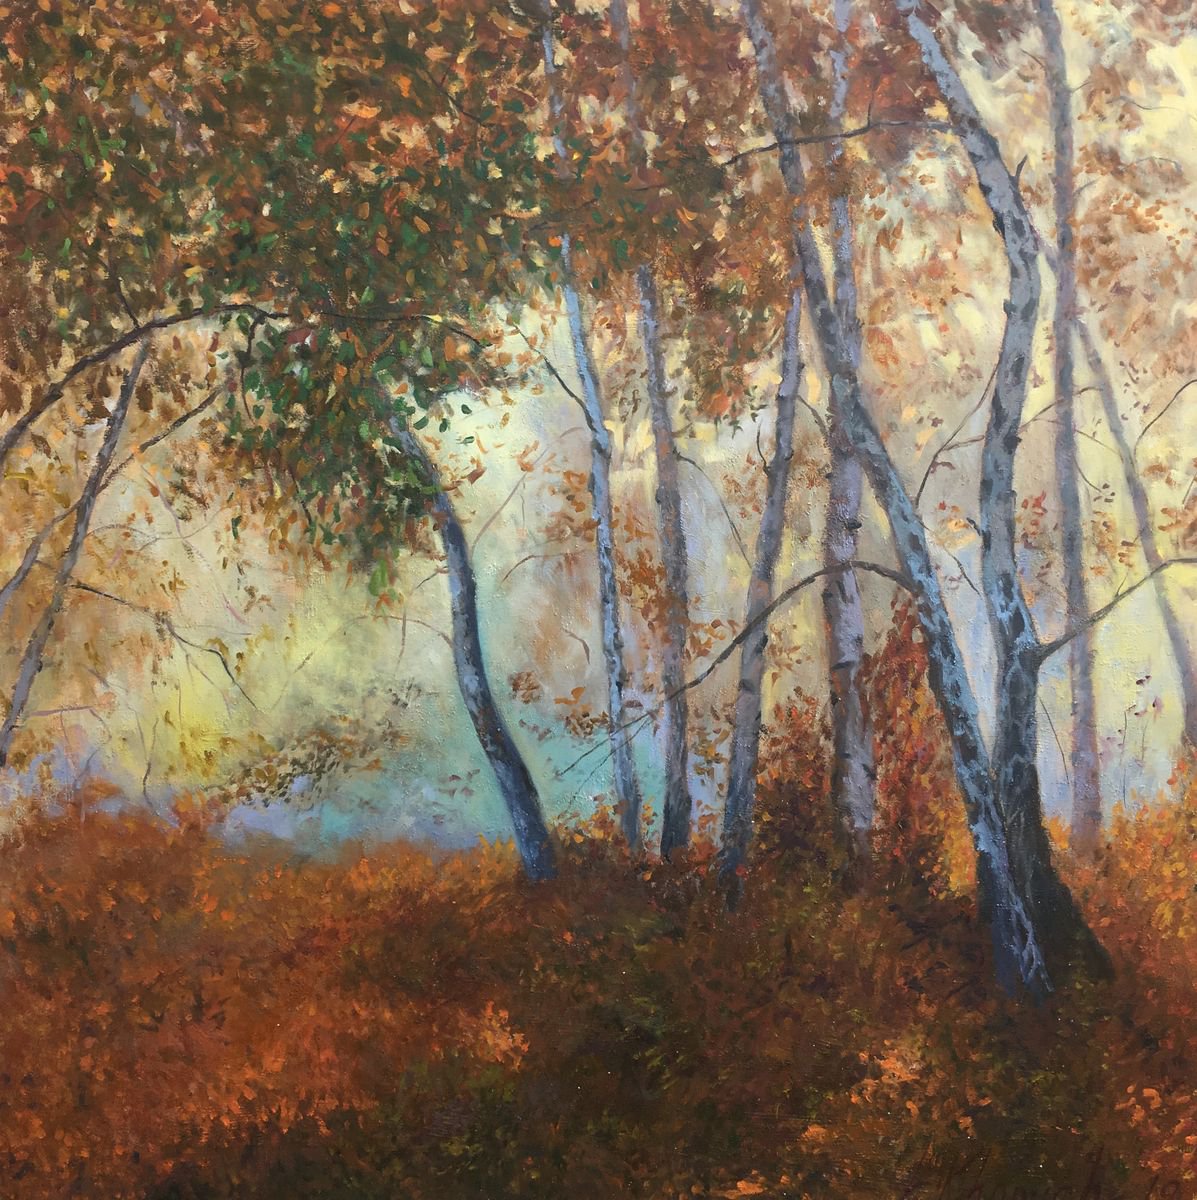 Autumn Forest, Autumn Landscape Art, Realistic Artwork by Leo Khomich